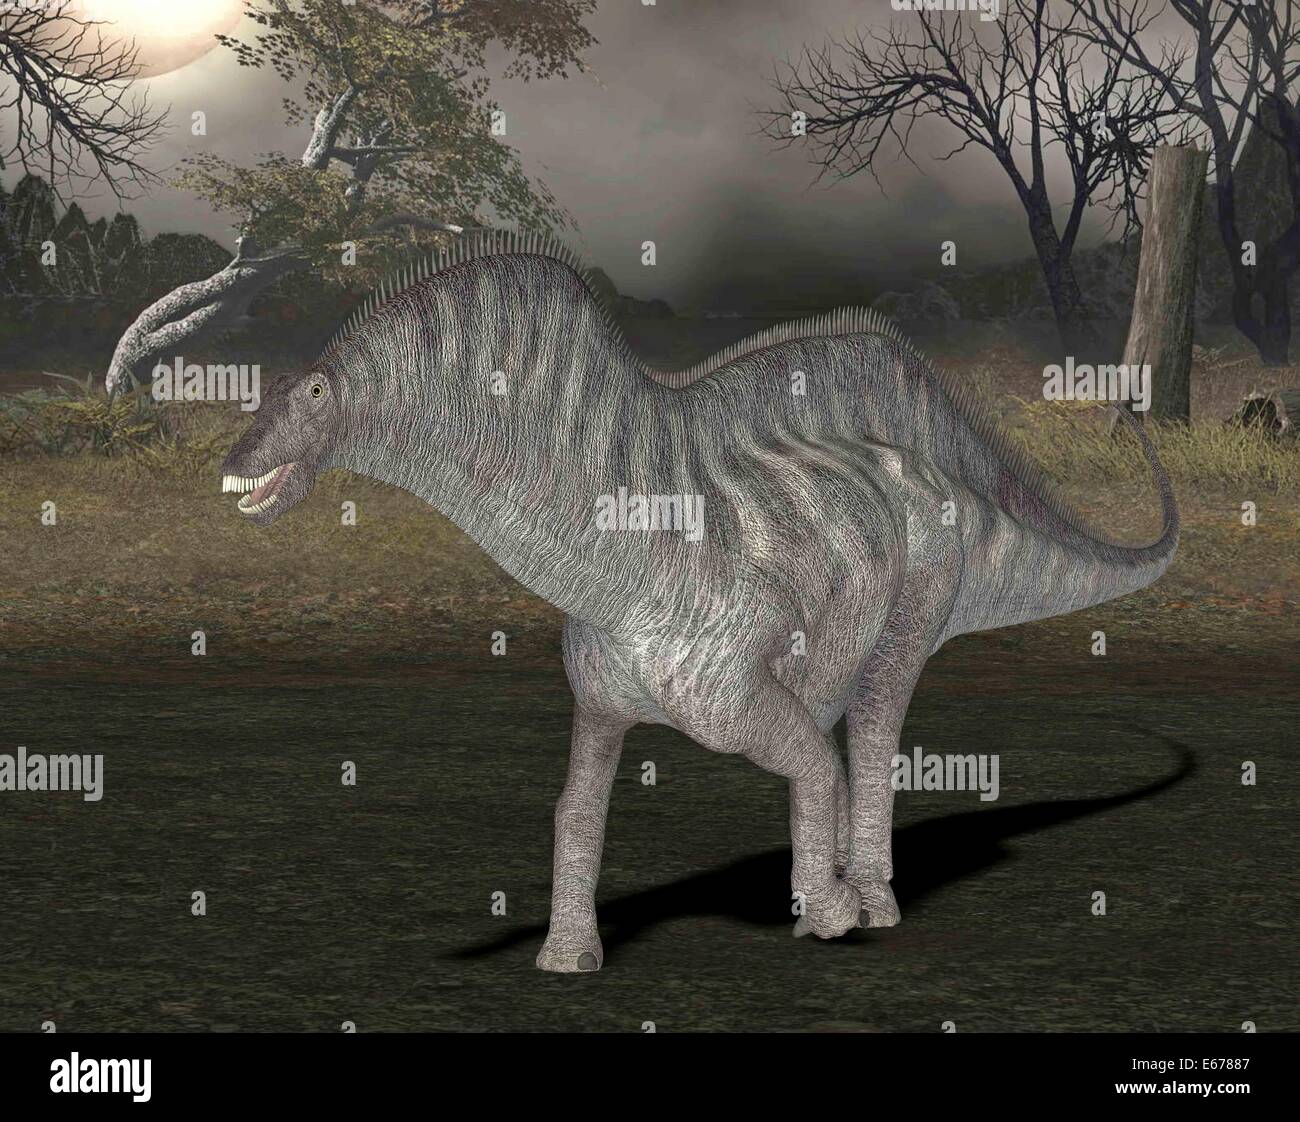 Dinosaurier Amargasaurus / dinosaur Amargasaurus Stock Photo